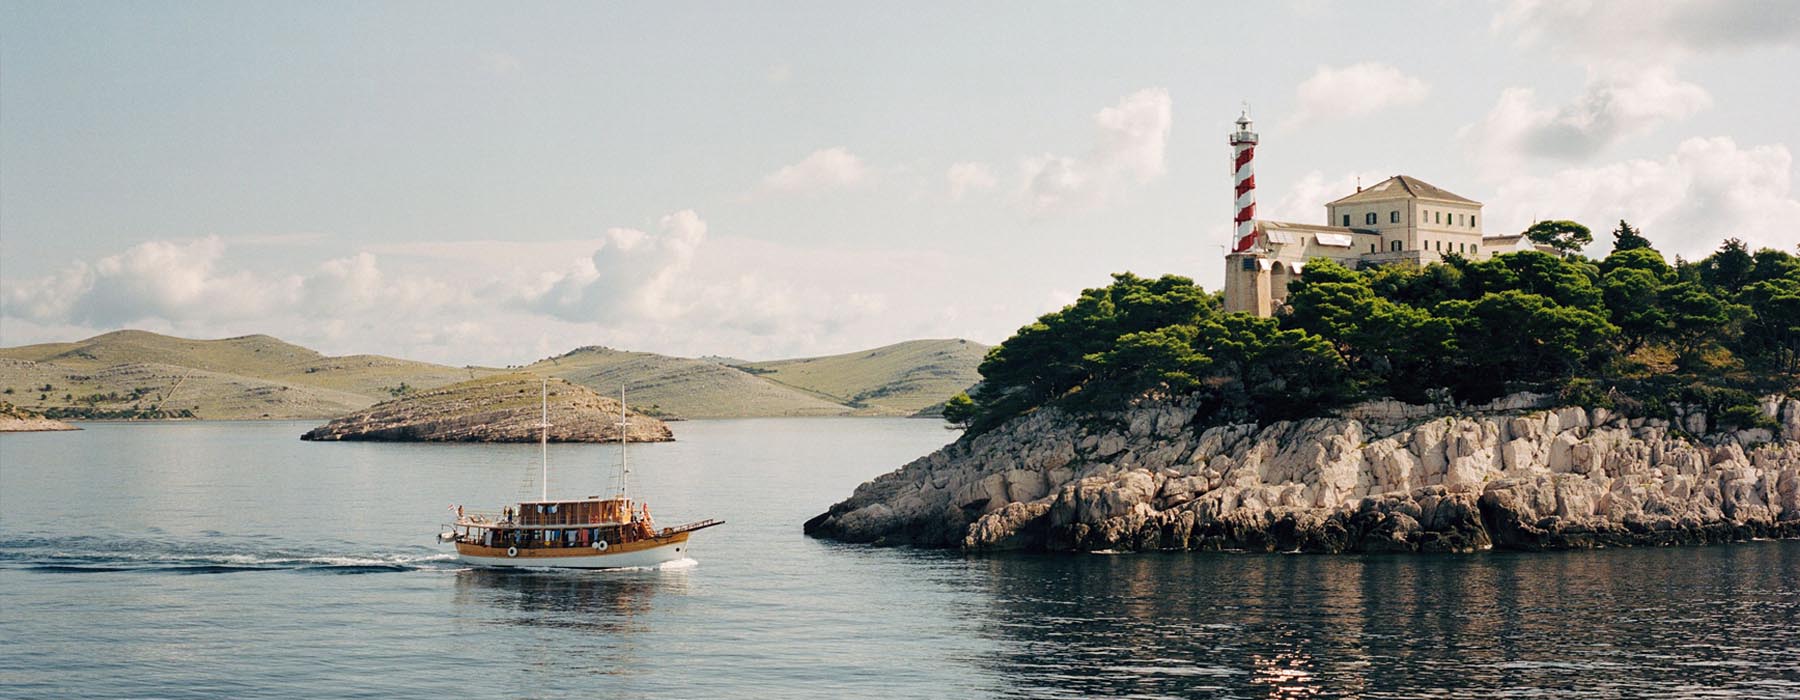 Voyages au lent cours Croatie